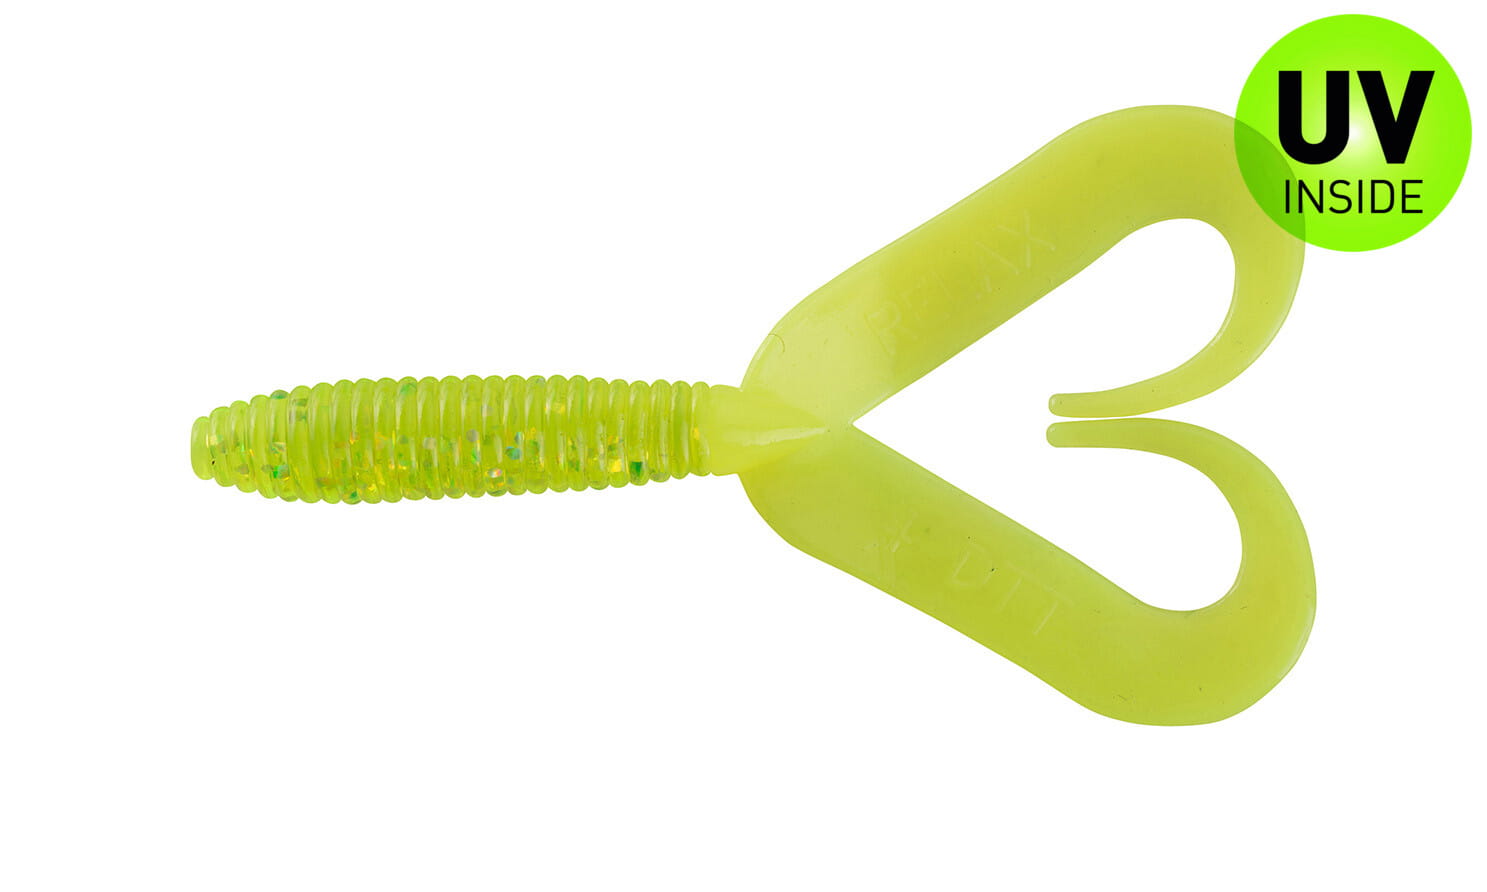 Rel hache Twister Doubletail régulier 7 cm (3") Vert-Glitter Fire-Tail 5 pièces